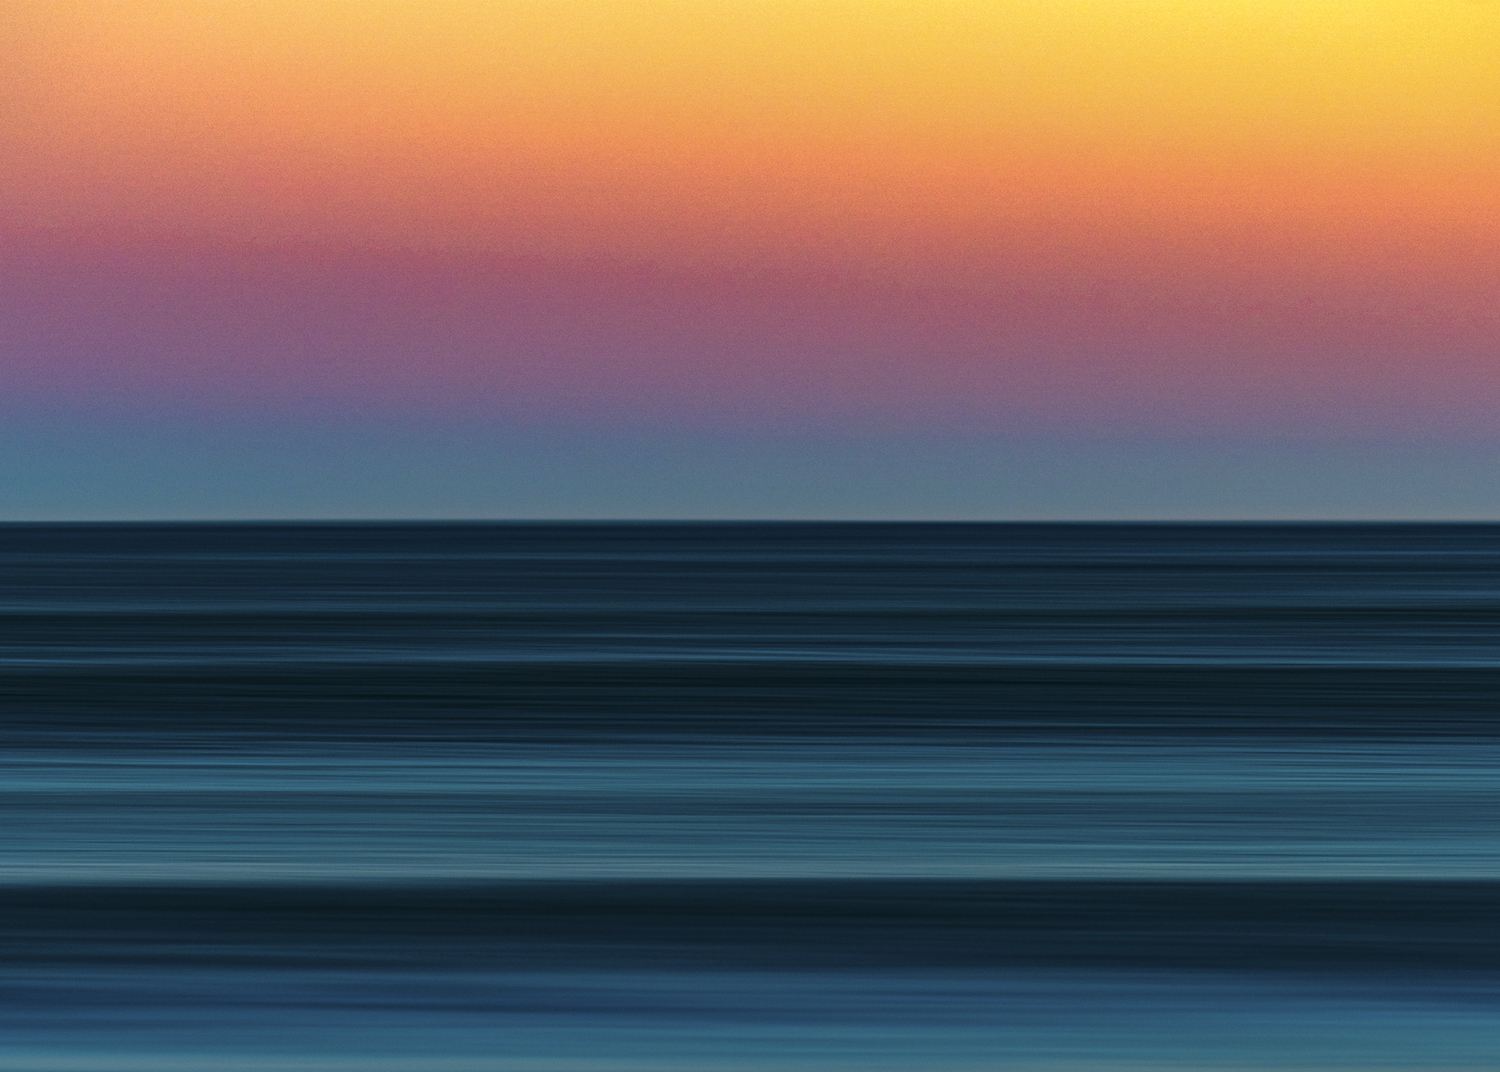 The sunset over the ocean. COURTESY JAMES KATSIPIS